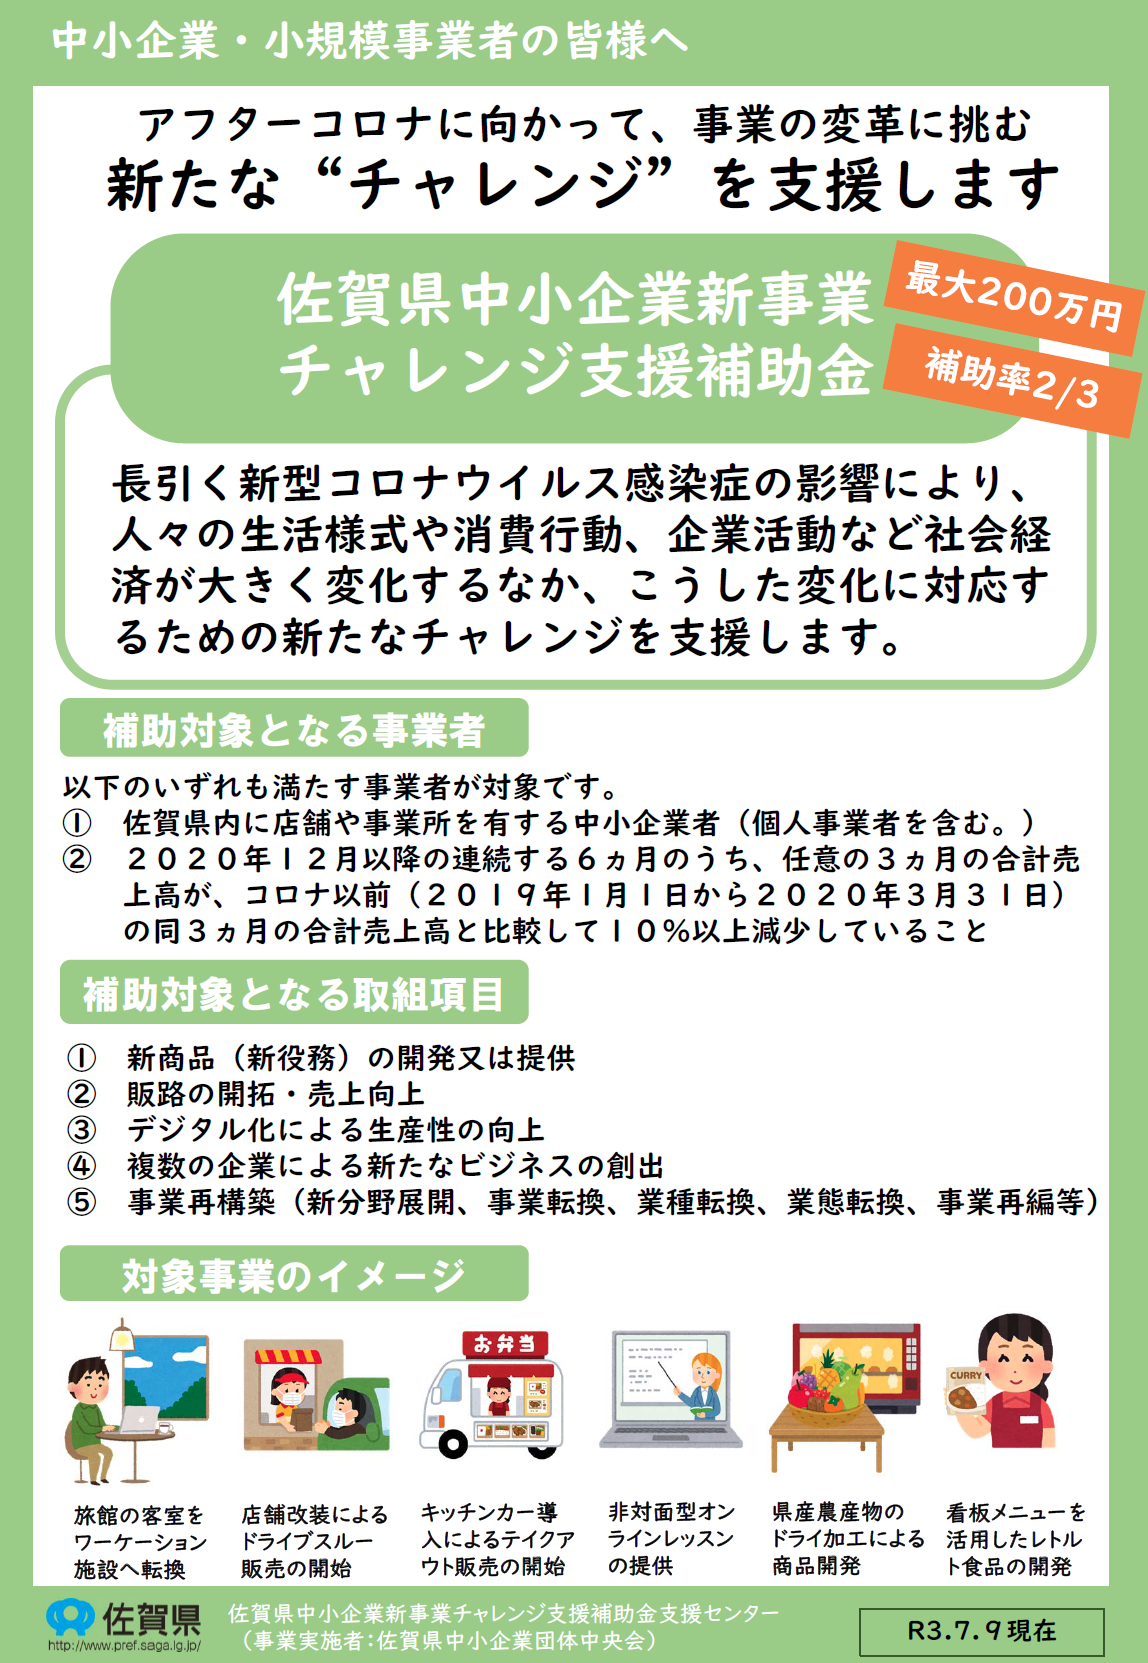 【補助金】佐賀県中小企業新事業チャレンジ支援補助金が公募されます